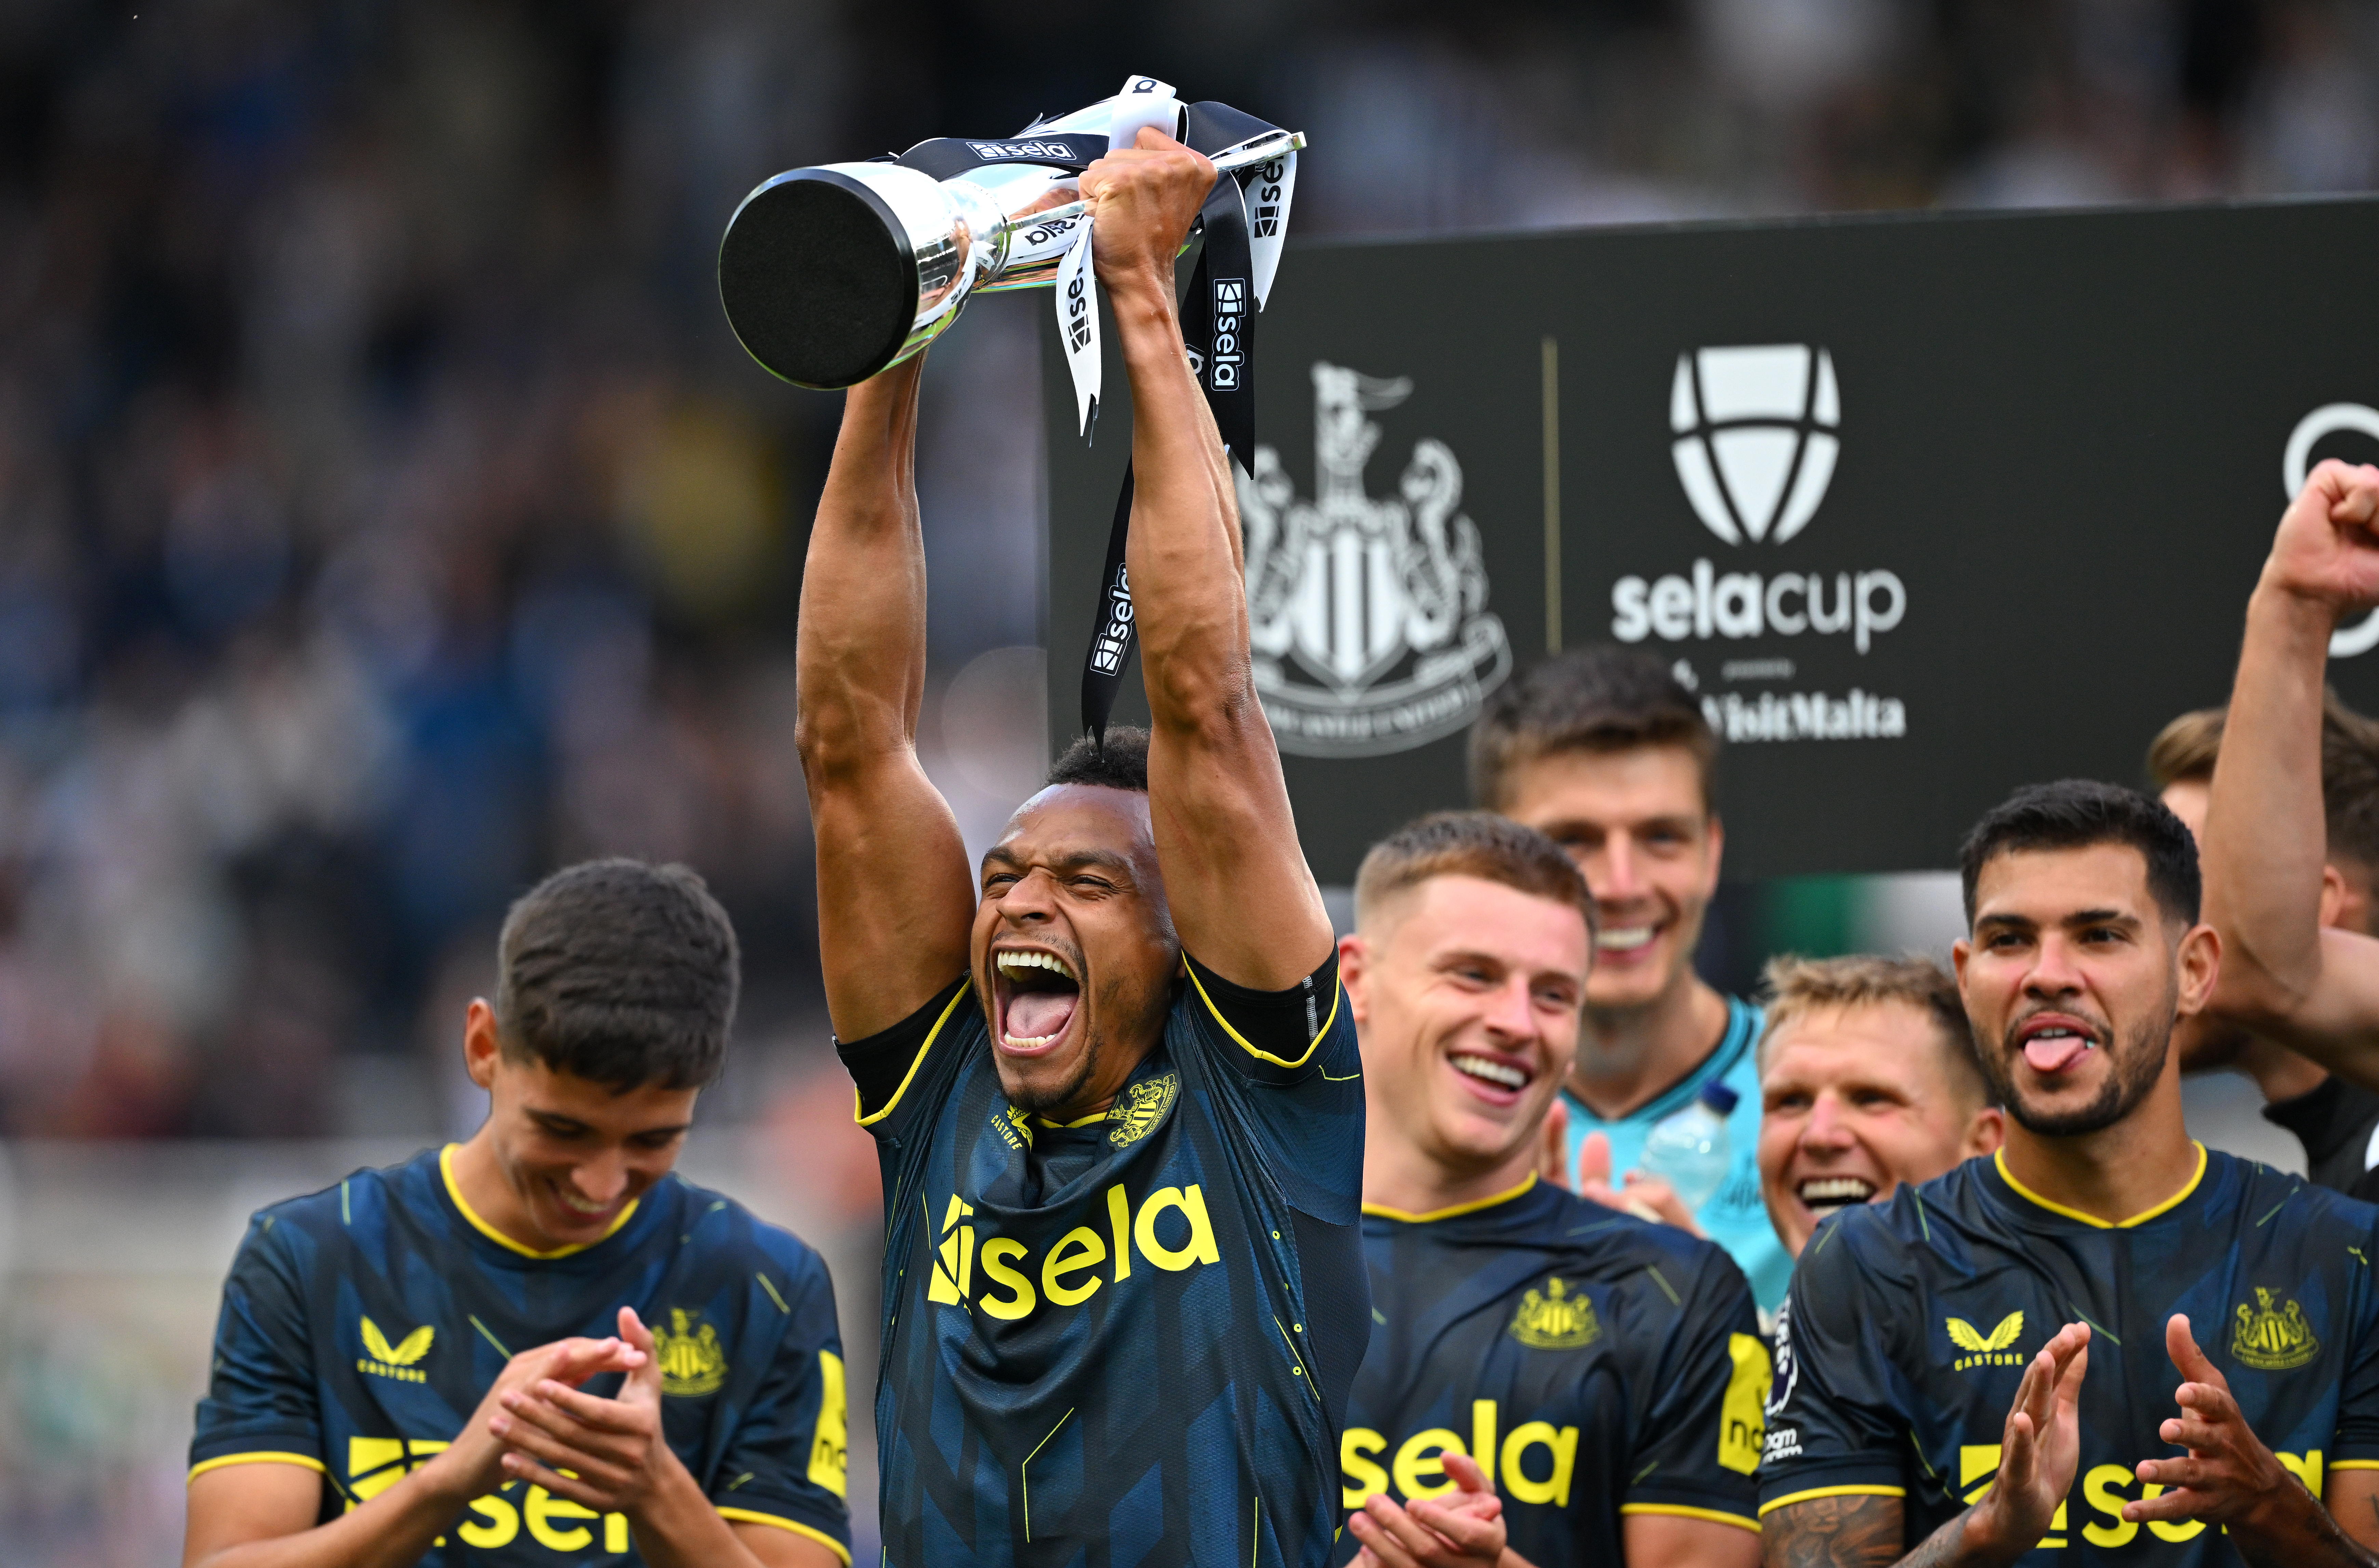 Newcastle gewann den Sela Cup nach einem 4:0-Sieg gegen Villareal